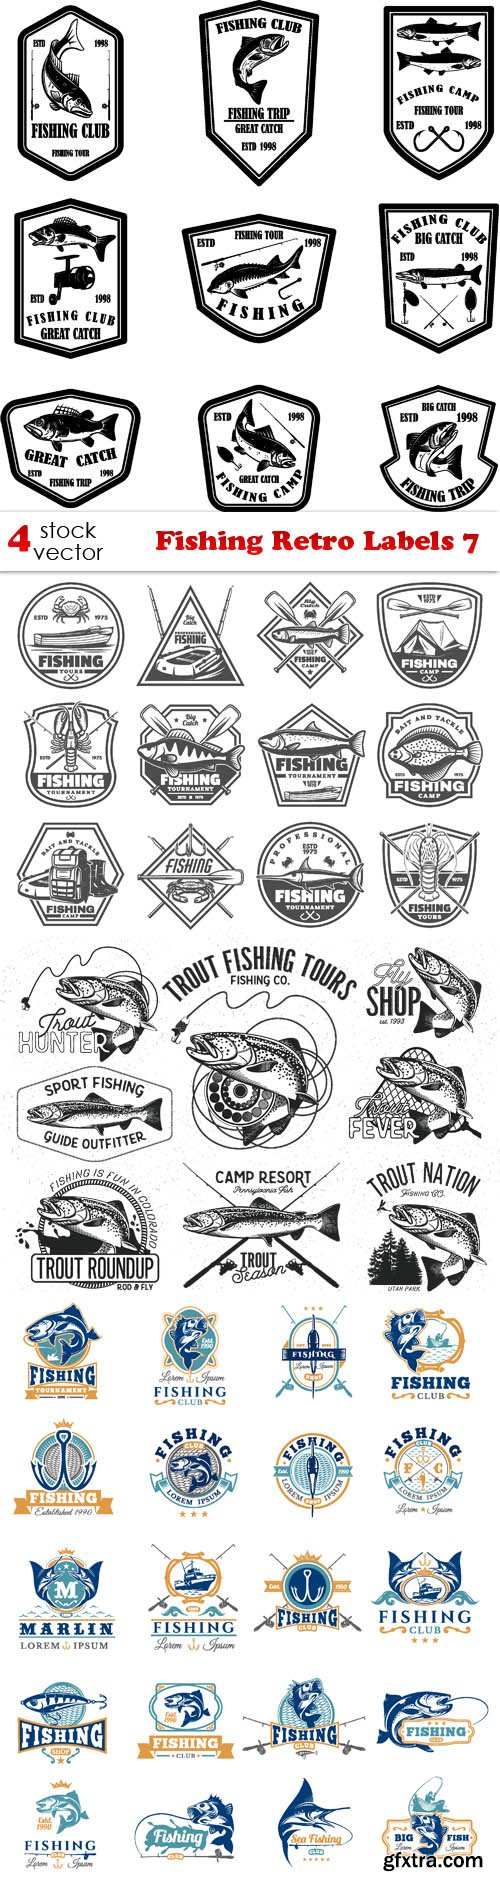 Vectors - Fishing Retro Labels 7